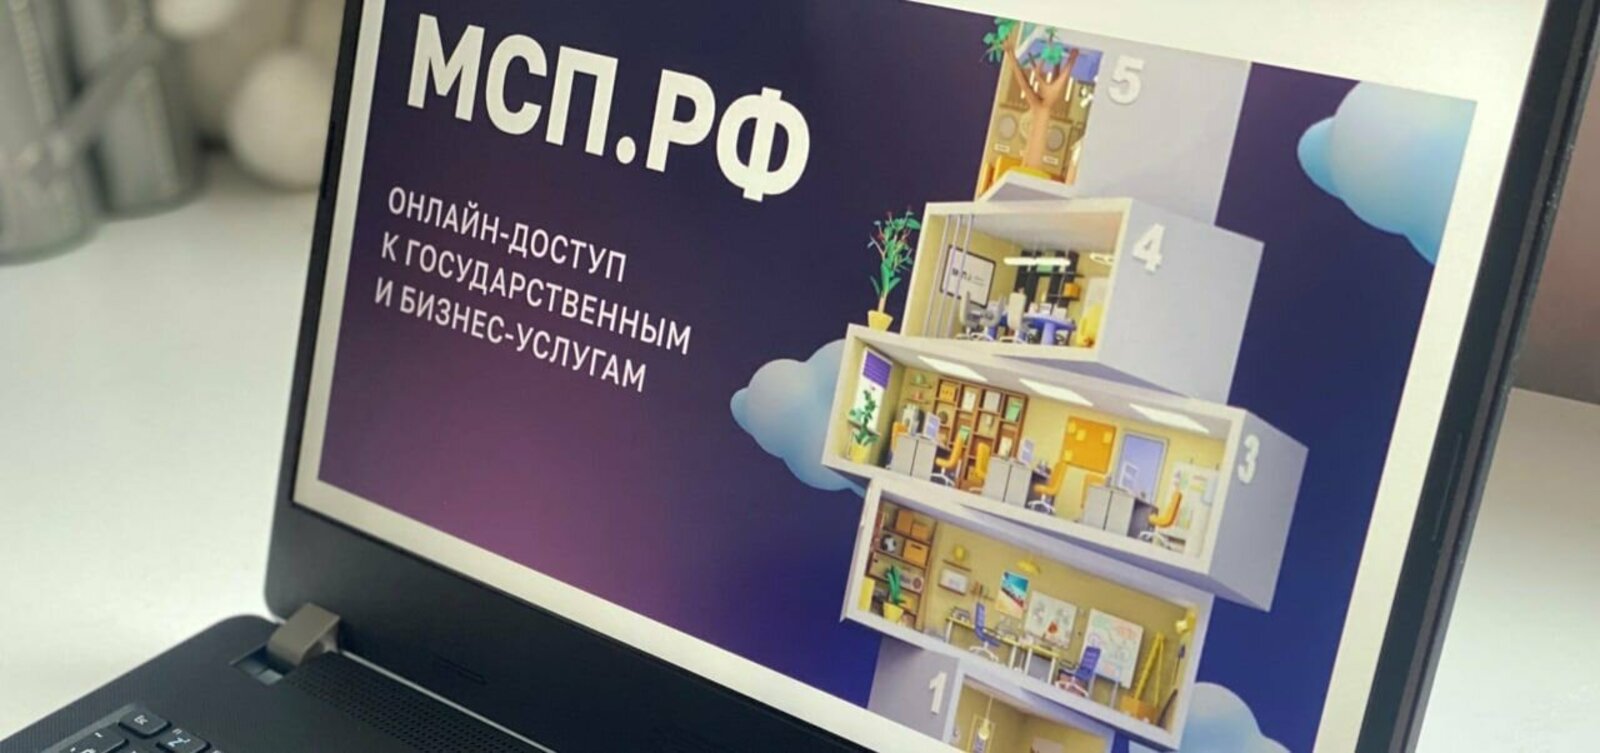 Башкортостан стал лидером по количеству объектов для бизнеса на Цифровой платформе МСП.РФ